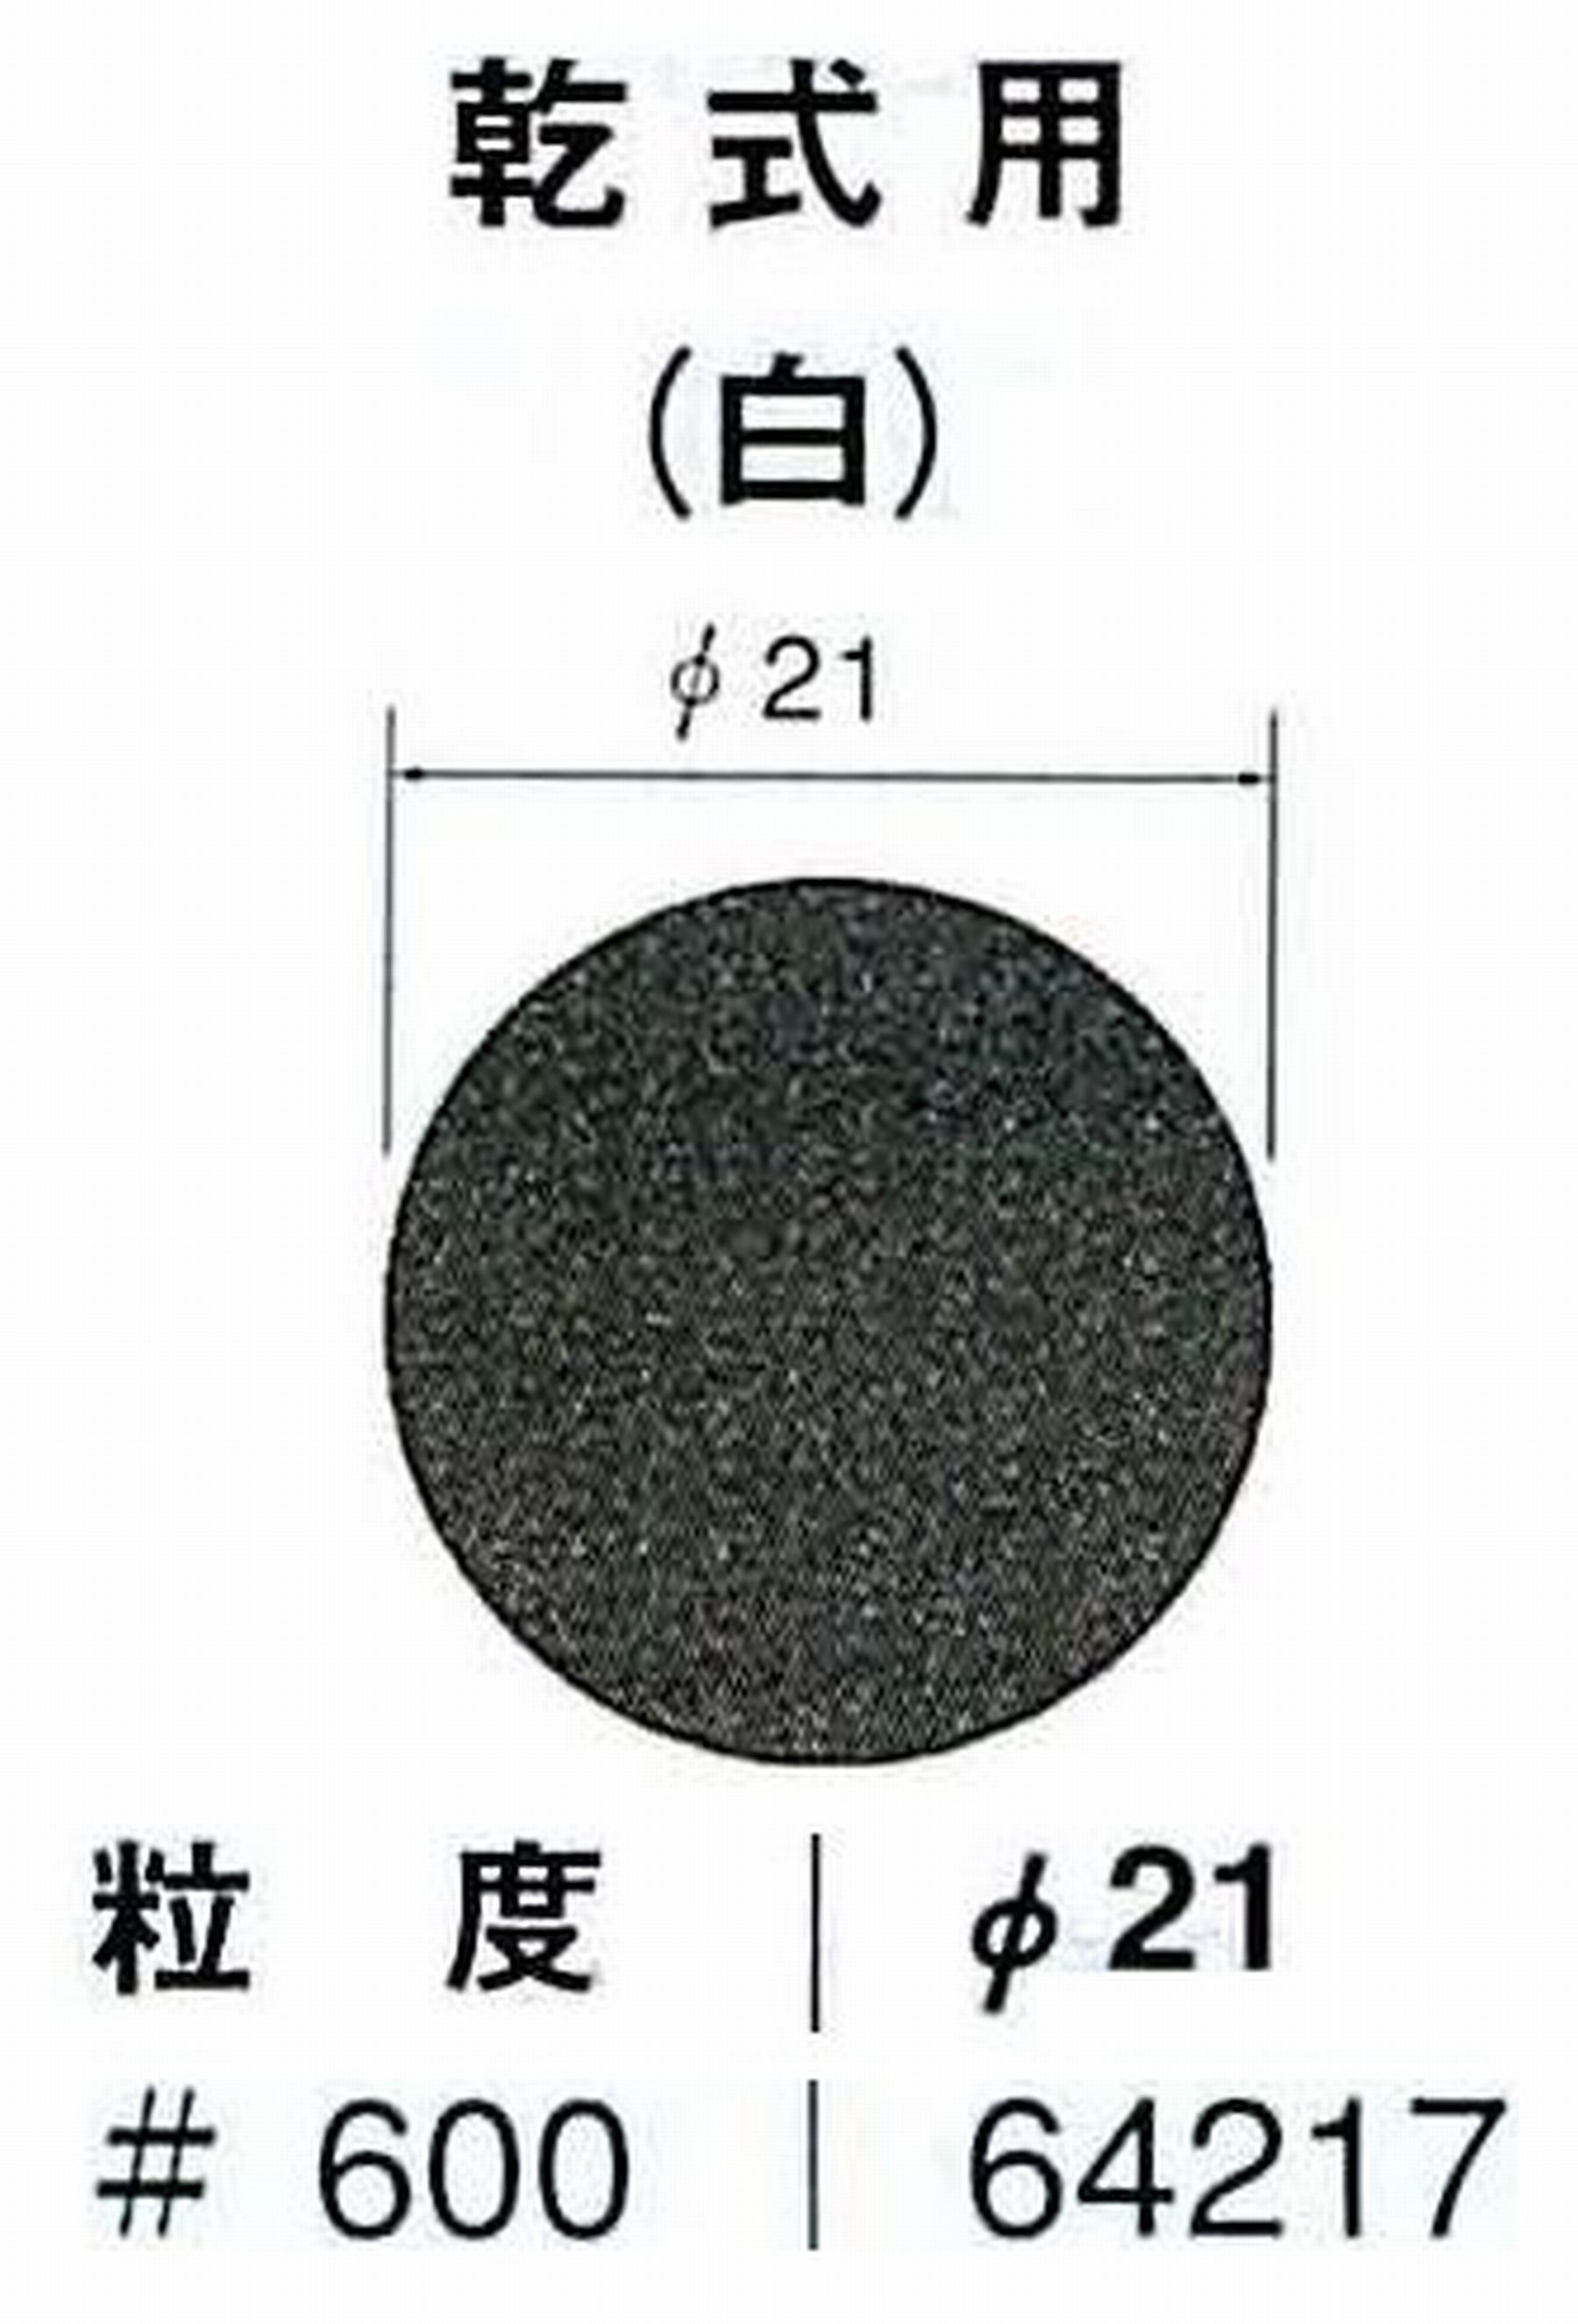 ナカニシ/NAKANISHI アングルグラインダ(電動・エアー) アングルアタッチメント専用工具 サンドペーパーディスク(紙基材タイプ)裏面のり処理 64217